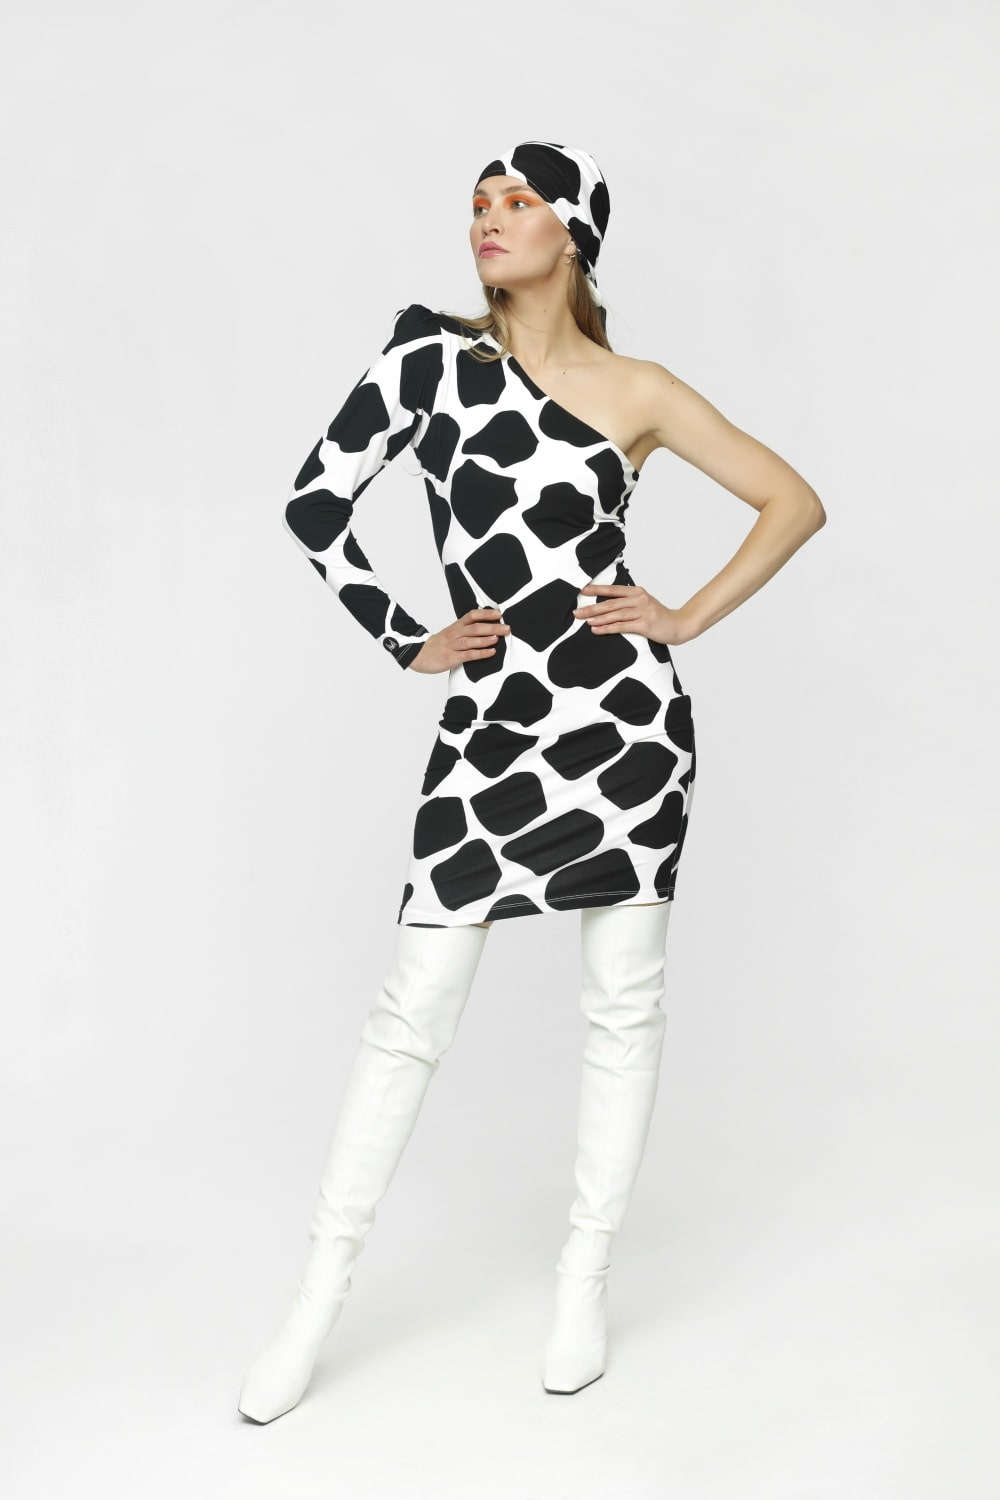 sukienka w krowę, sukienka krowi print, sukienka na jedno ramię, czarno-biała sukienka